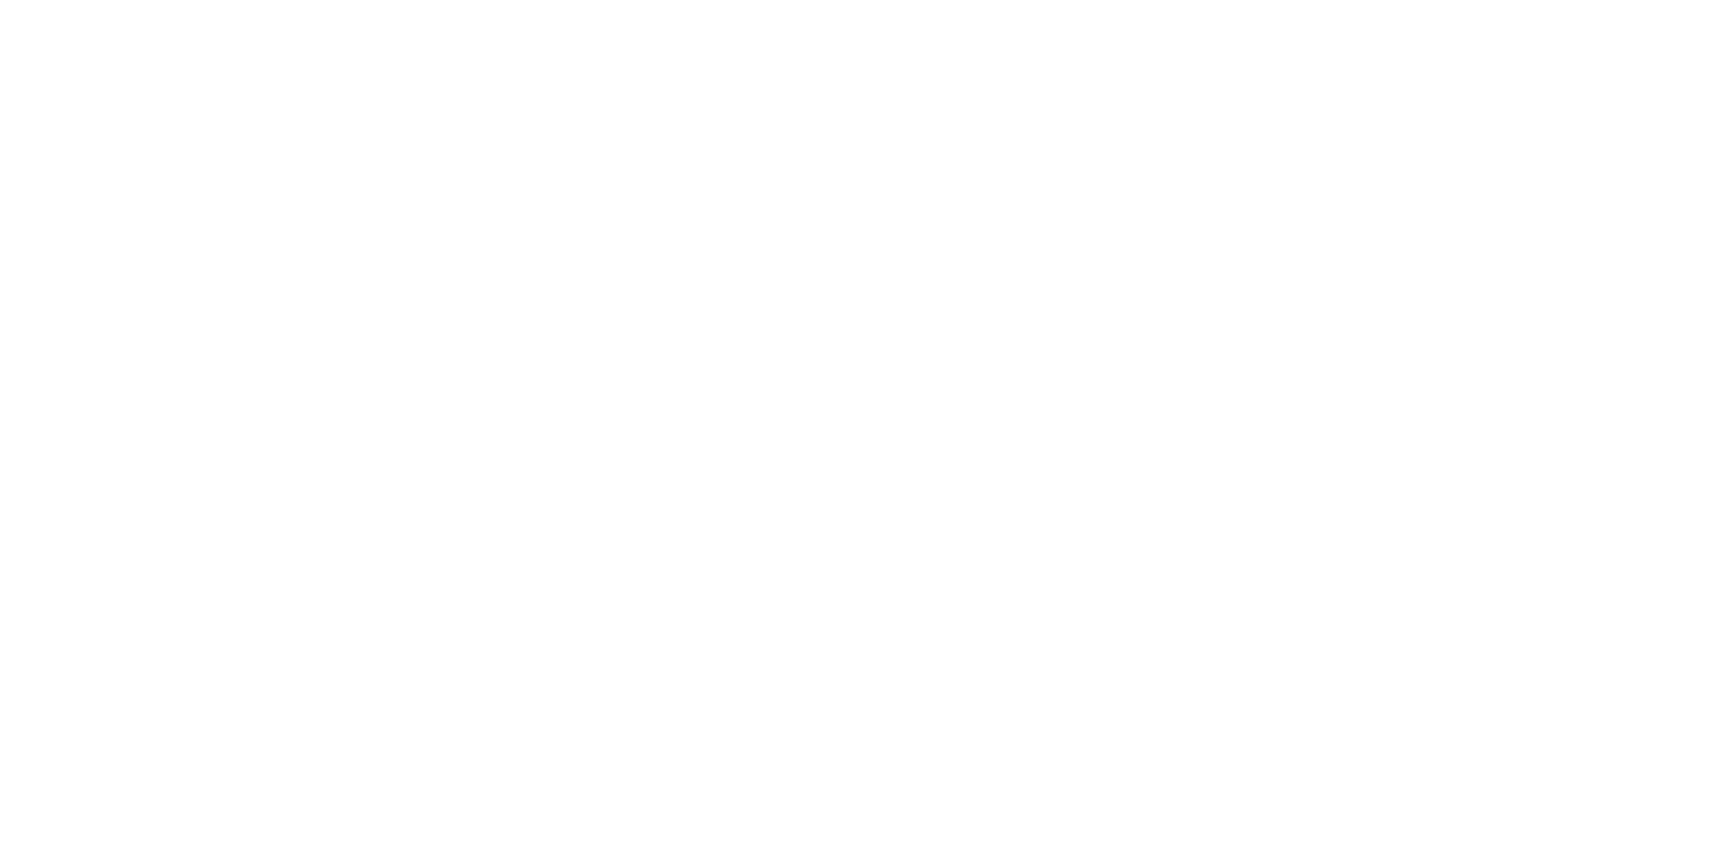 Select Marbella